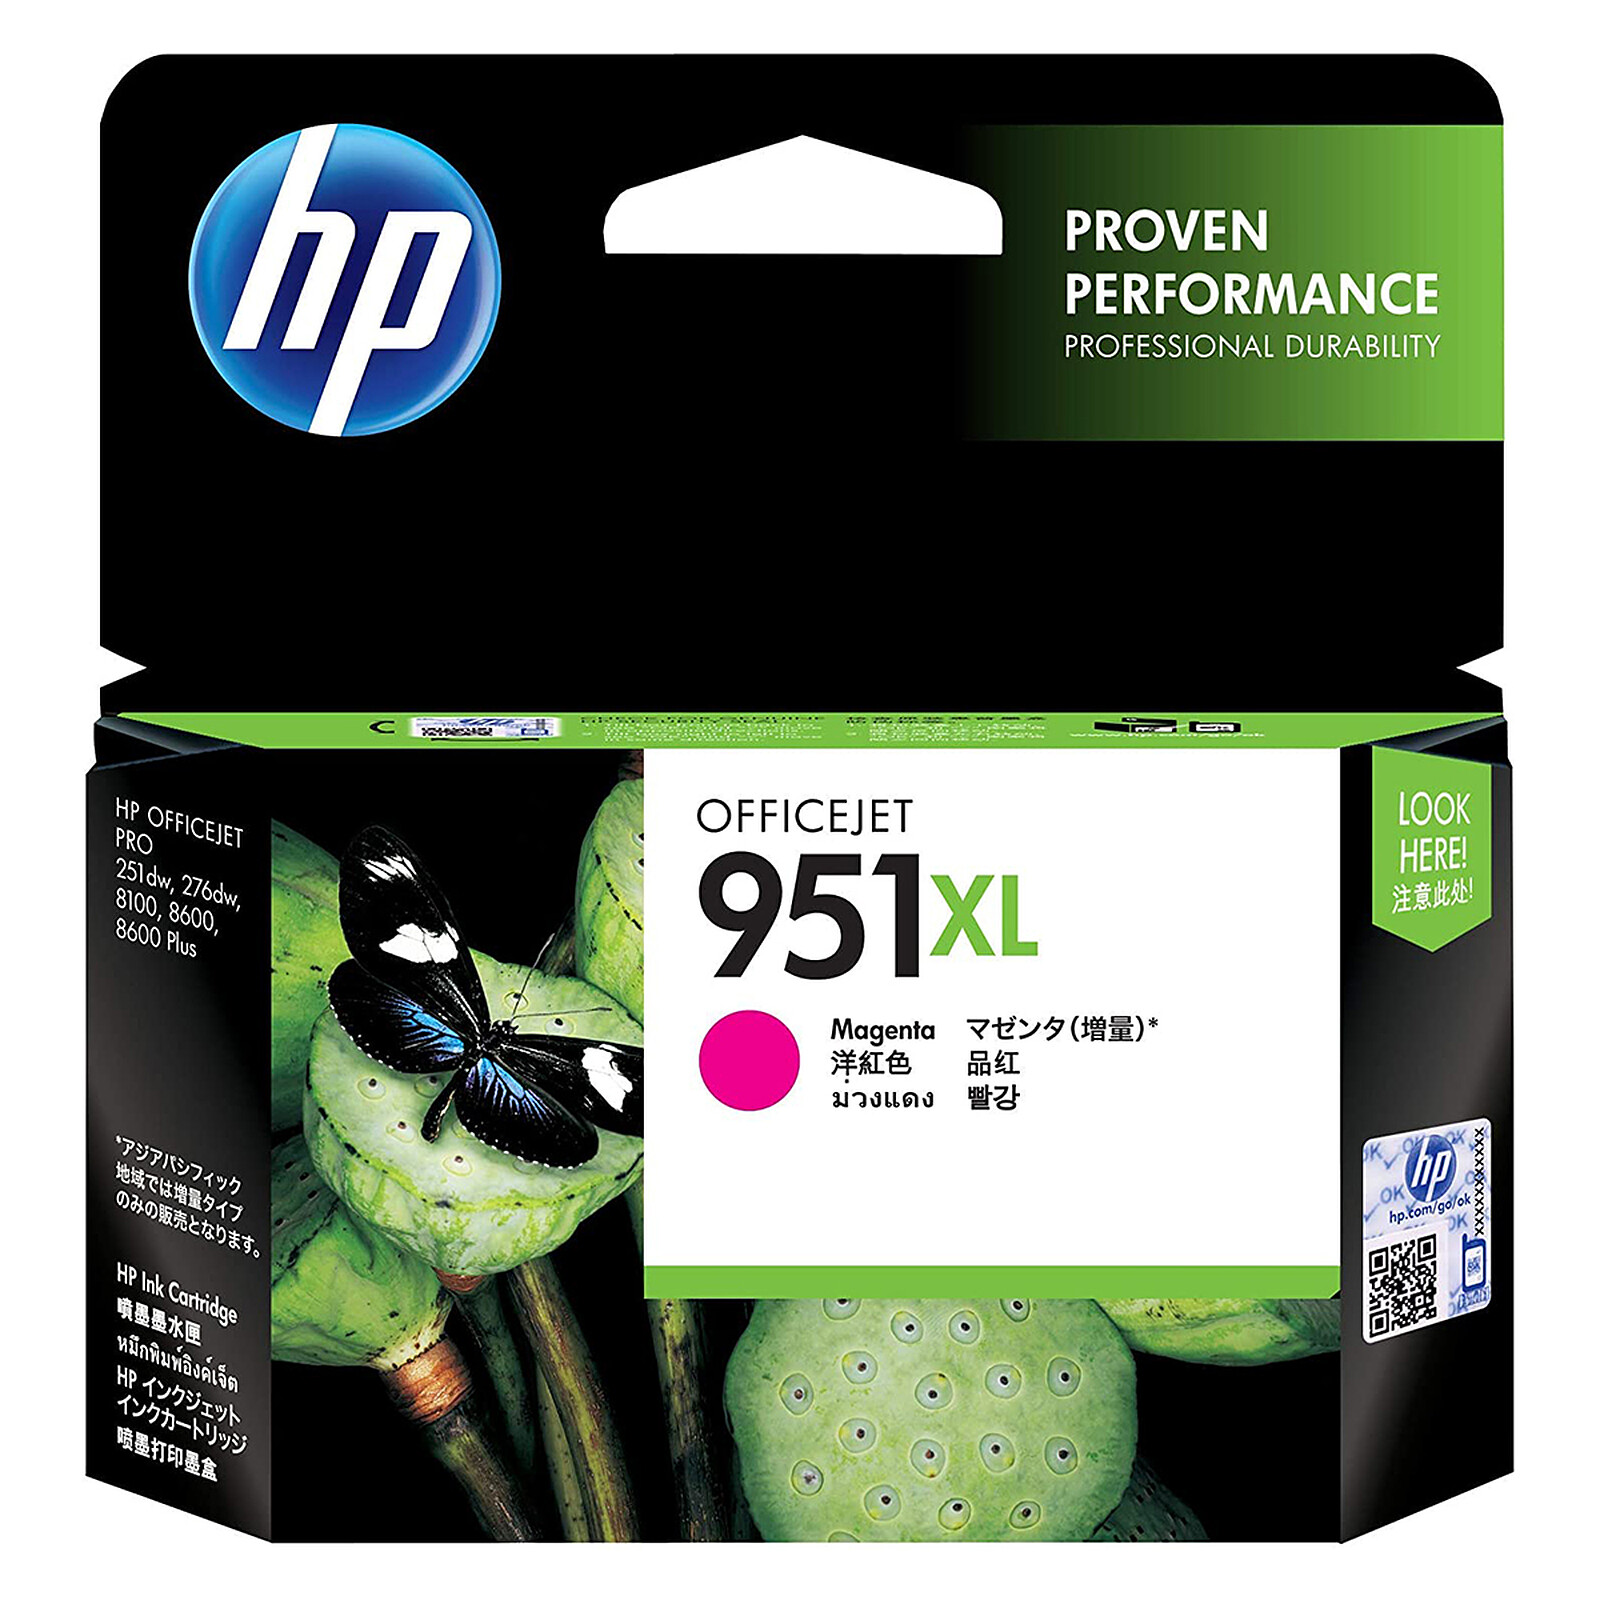 Cartouche D'encre Compatible HP 951 XL Cyan pour Imprimante